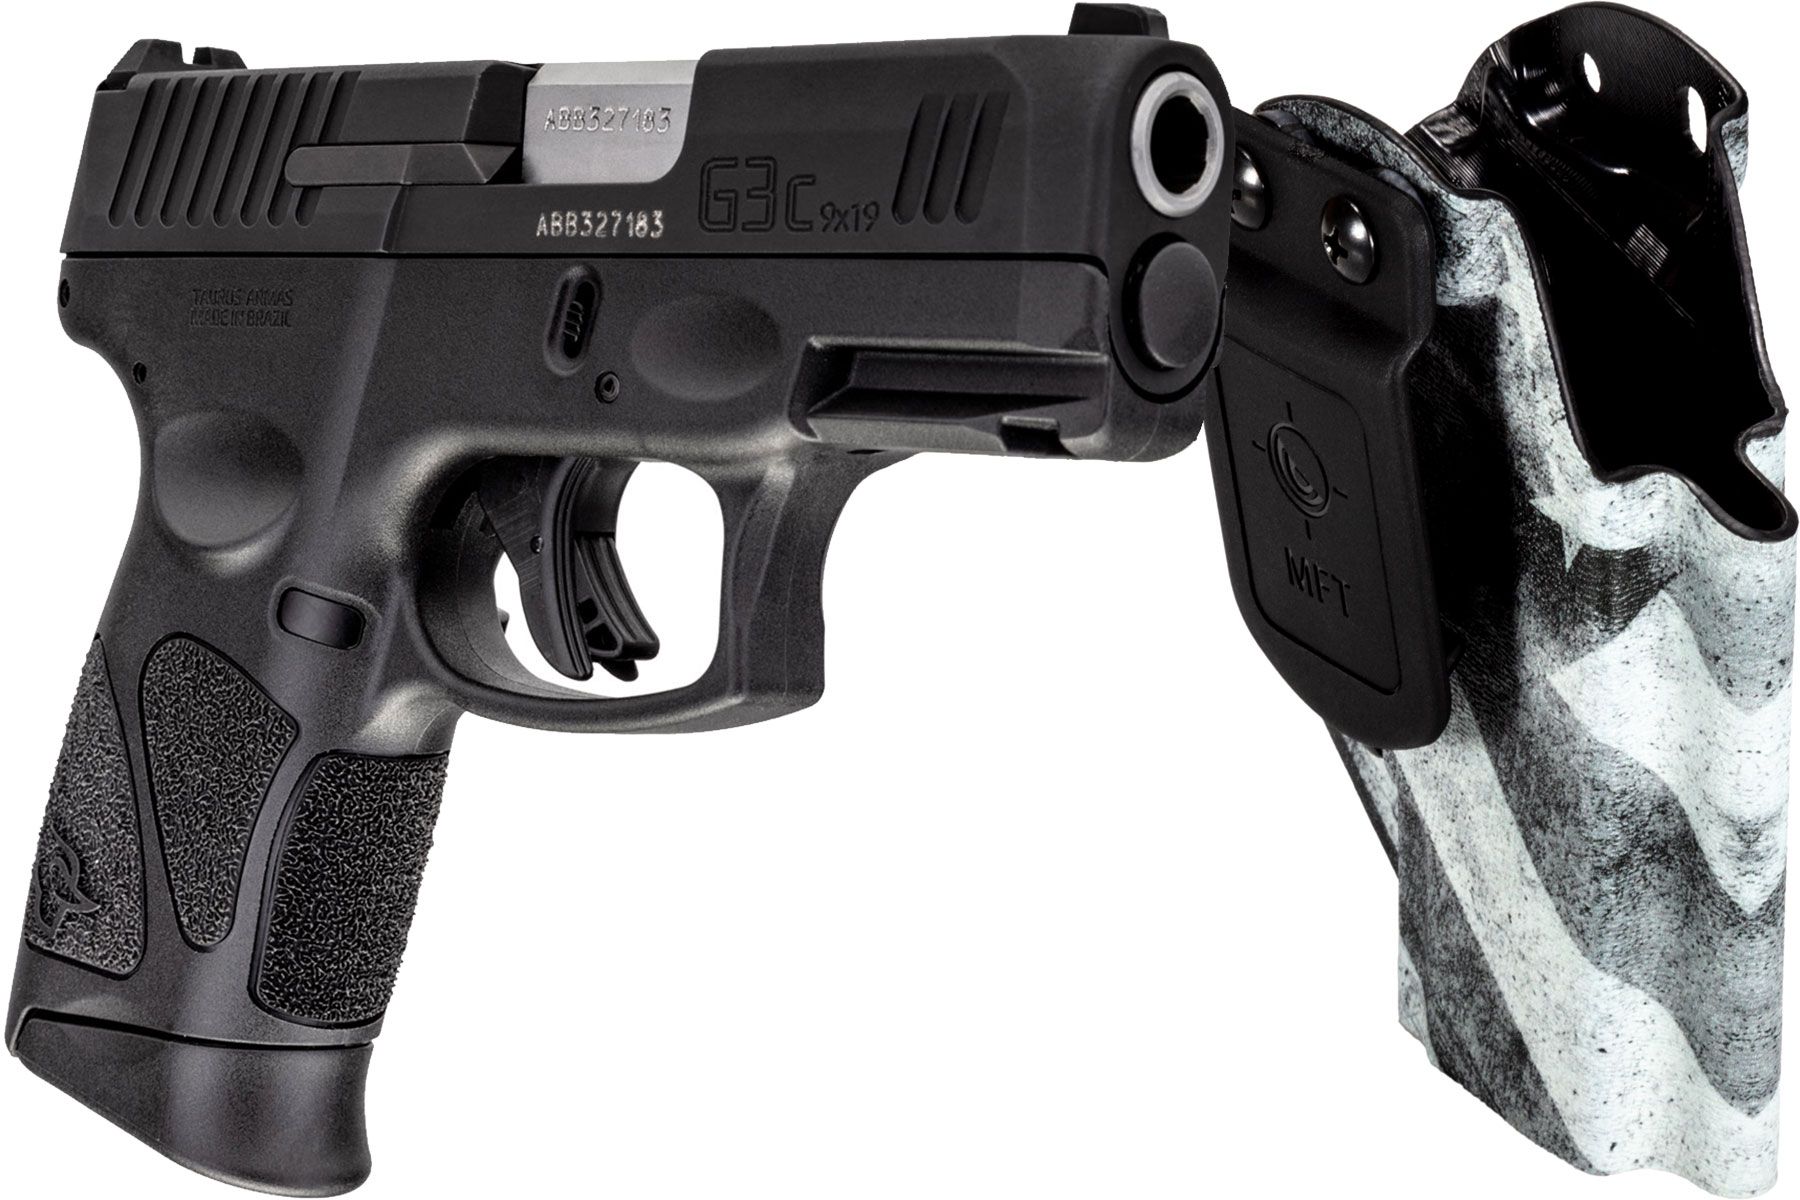 Taurus G3c Tenifer Matte Black 9mm Luger Compact 12 Rds. MFT B/W Holster